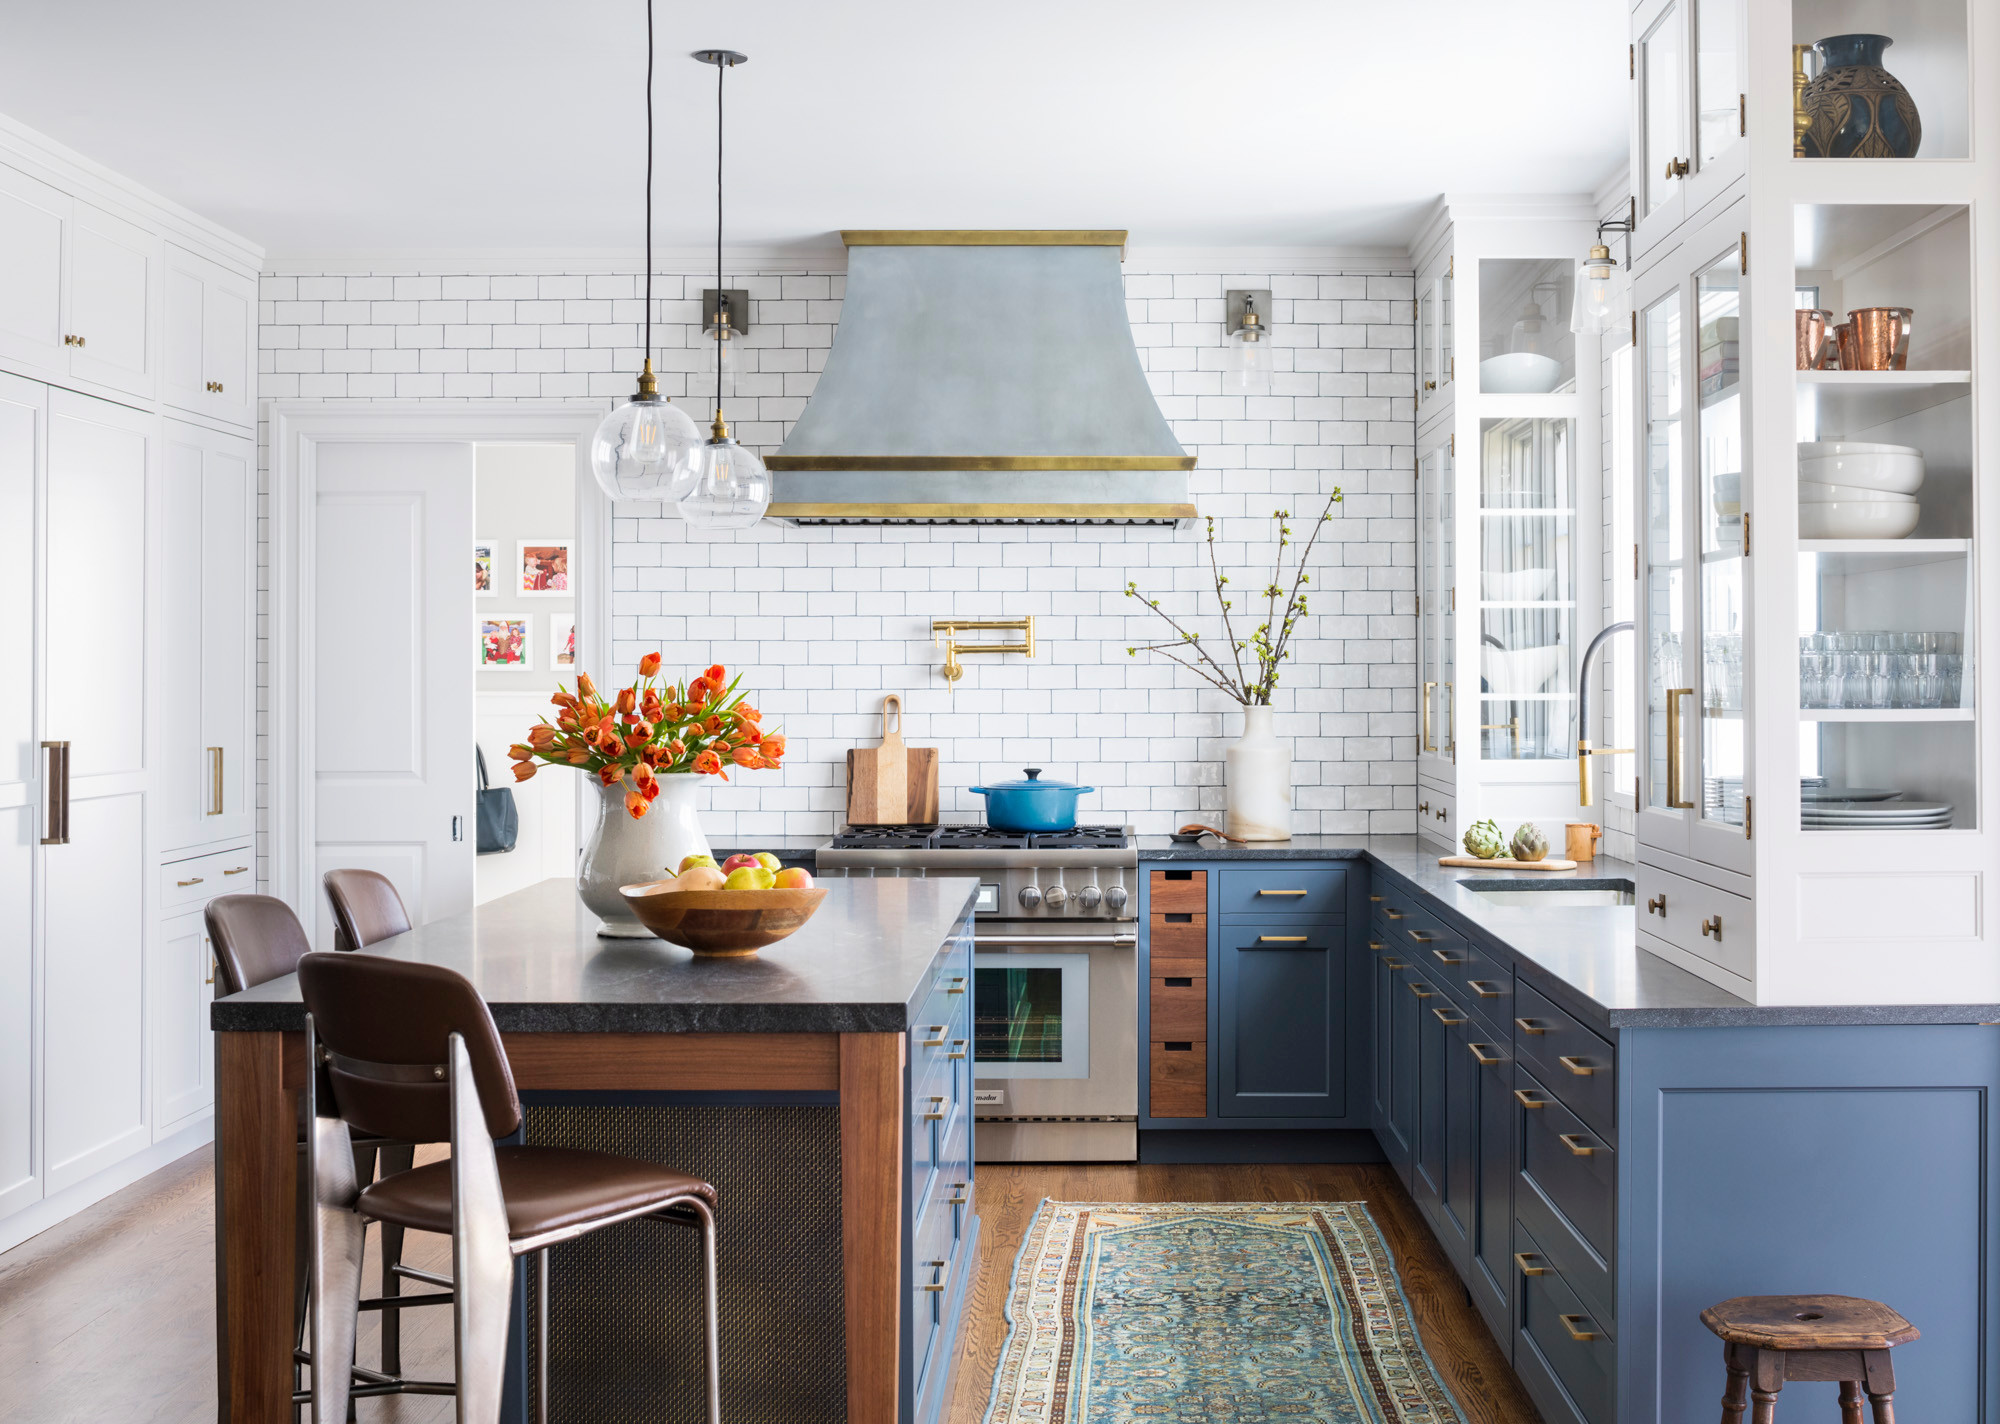 33 Blue and White Kitchens (Design Ideas)  Blue kitchen appliances, Kitchen  cabinet door styles, White kitchen accessories